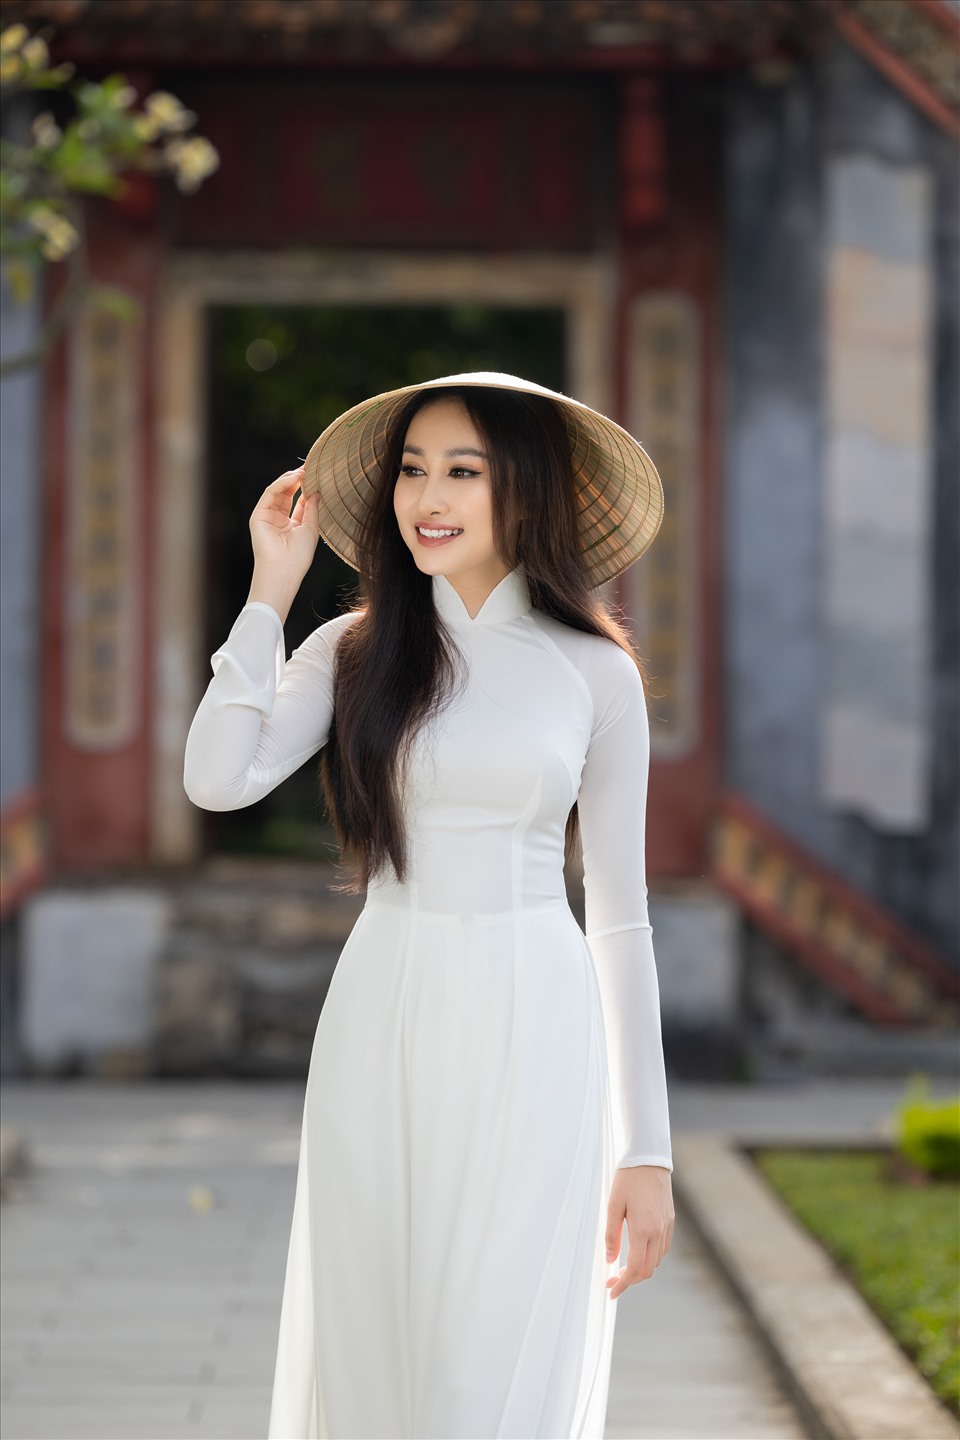 Đây là bộ ảnh áo dài mà Đoàn Hồng Trang tâm huyết thực hiện bởi cô muốn được giới thiệu đến Miss Global 2022 một vẻ đẹp thuần Việt nhất, đặc sắc nhất từ con người đến địa danh cùng tinh thần của hình ảnh.